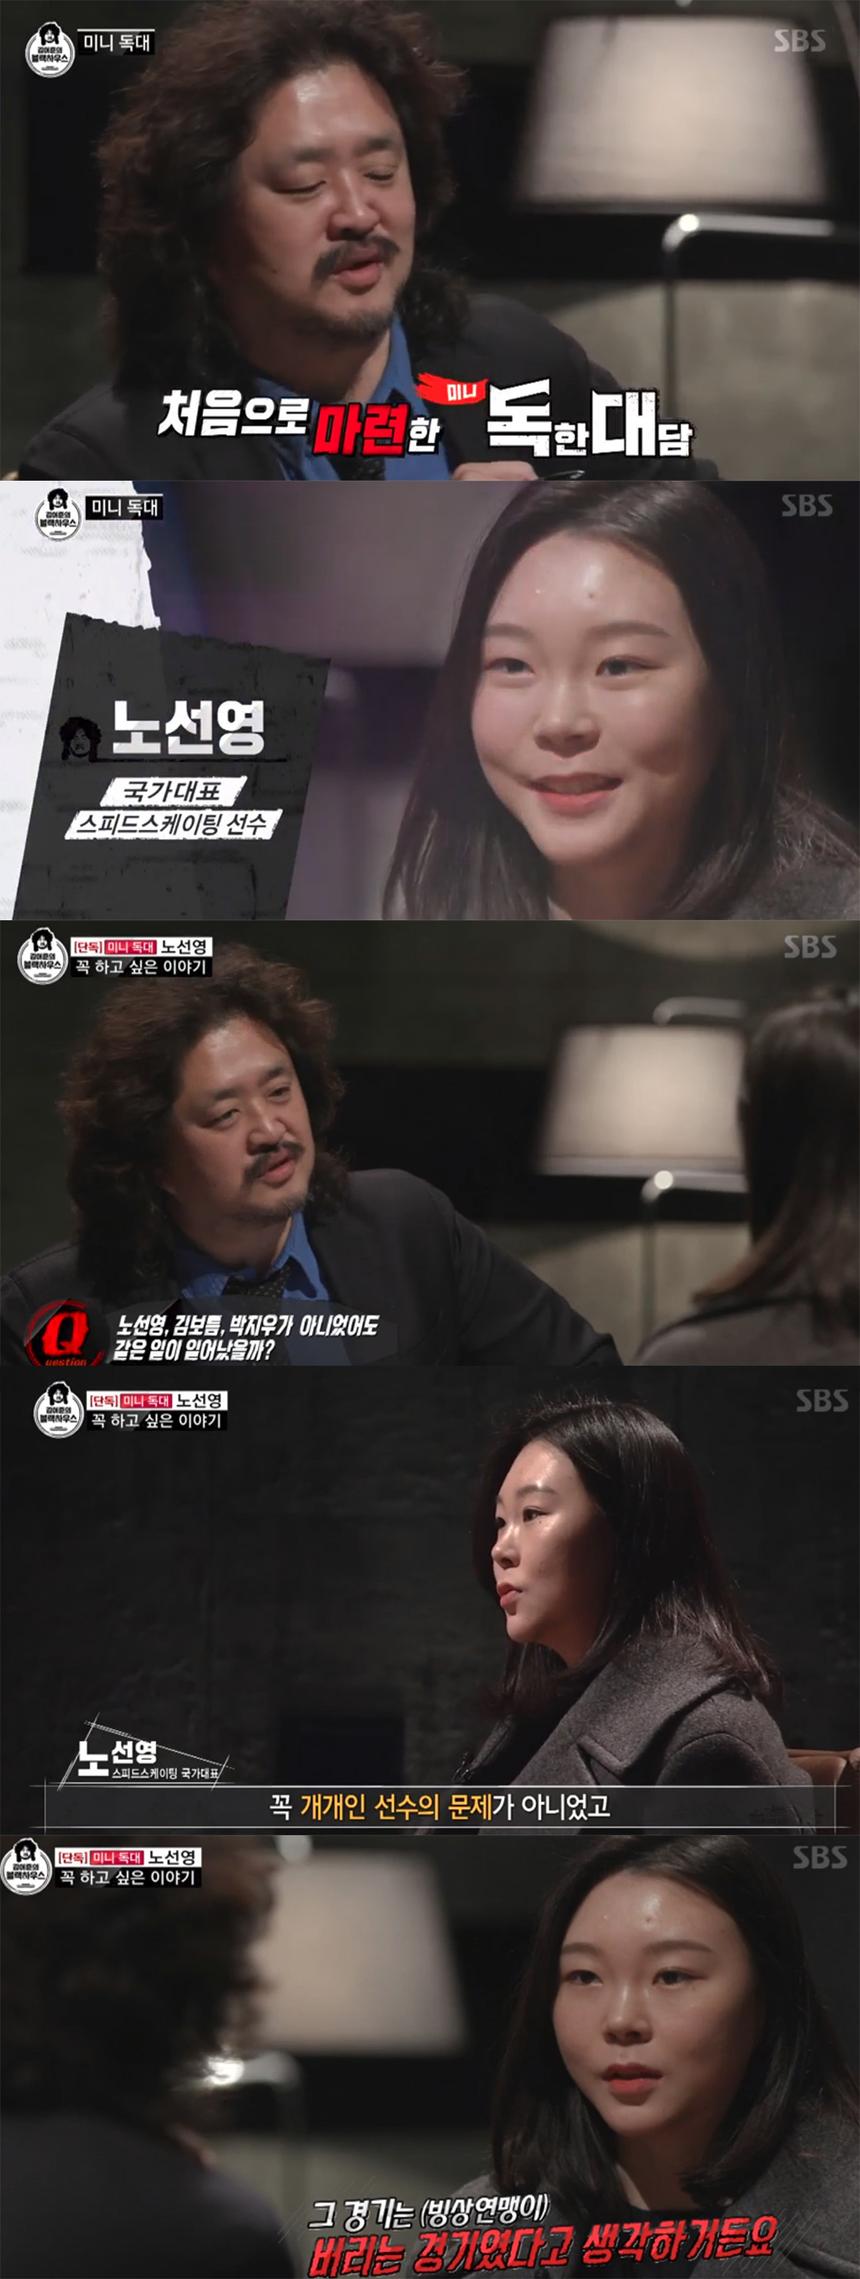 SBS ‘김어준의 블랙하우스’ 방송캡쳐